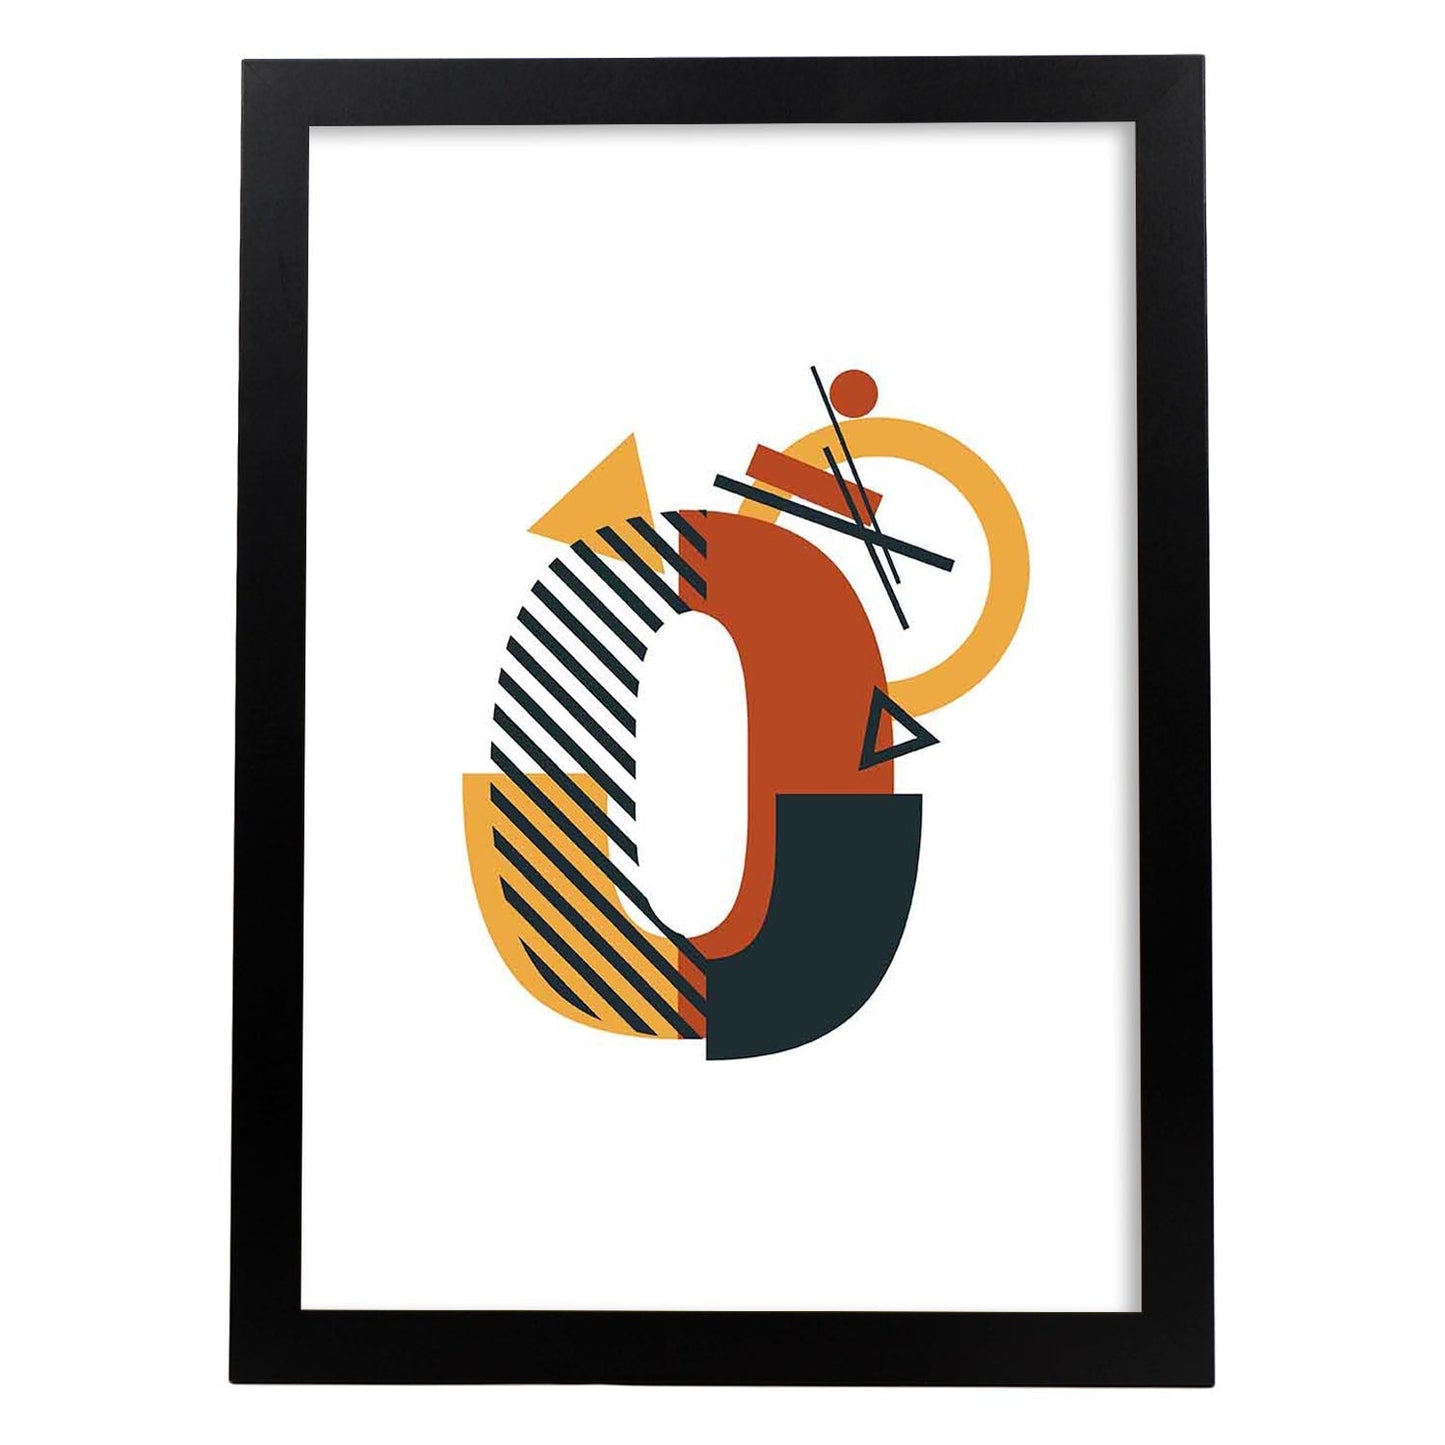 Poster de número 0. Lámina estilo Geometria con formas con imágenes del alfabeto.-Artwork-Nacnic-A4-Marco Negro-Nacnic Estudio SL